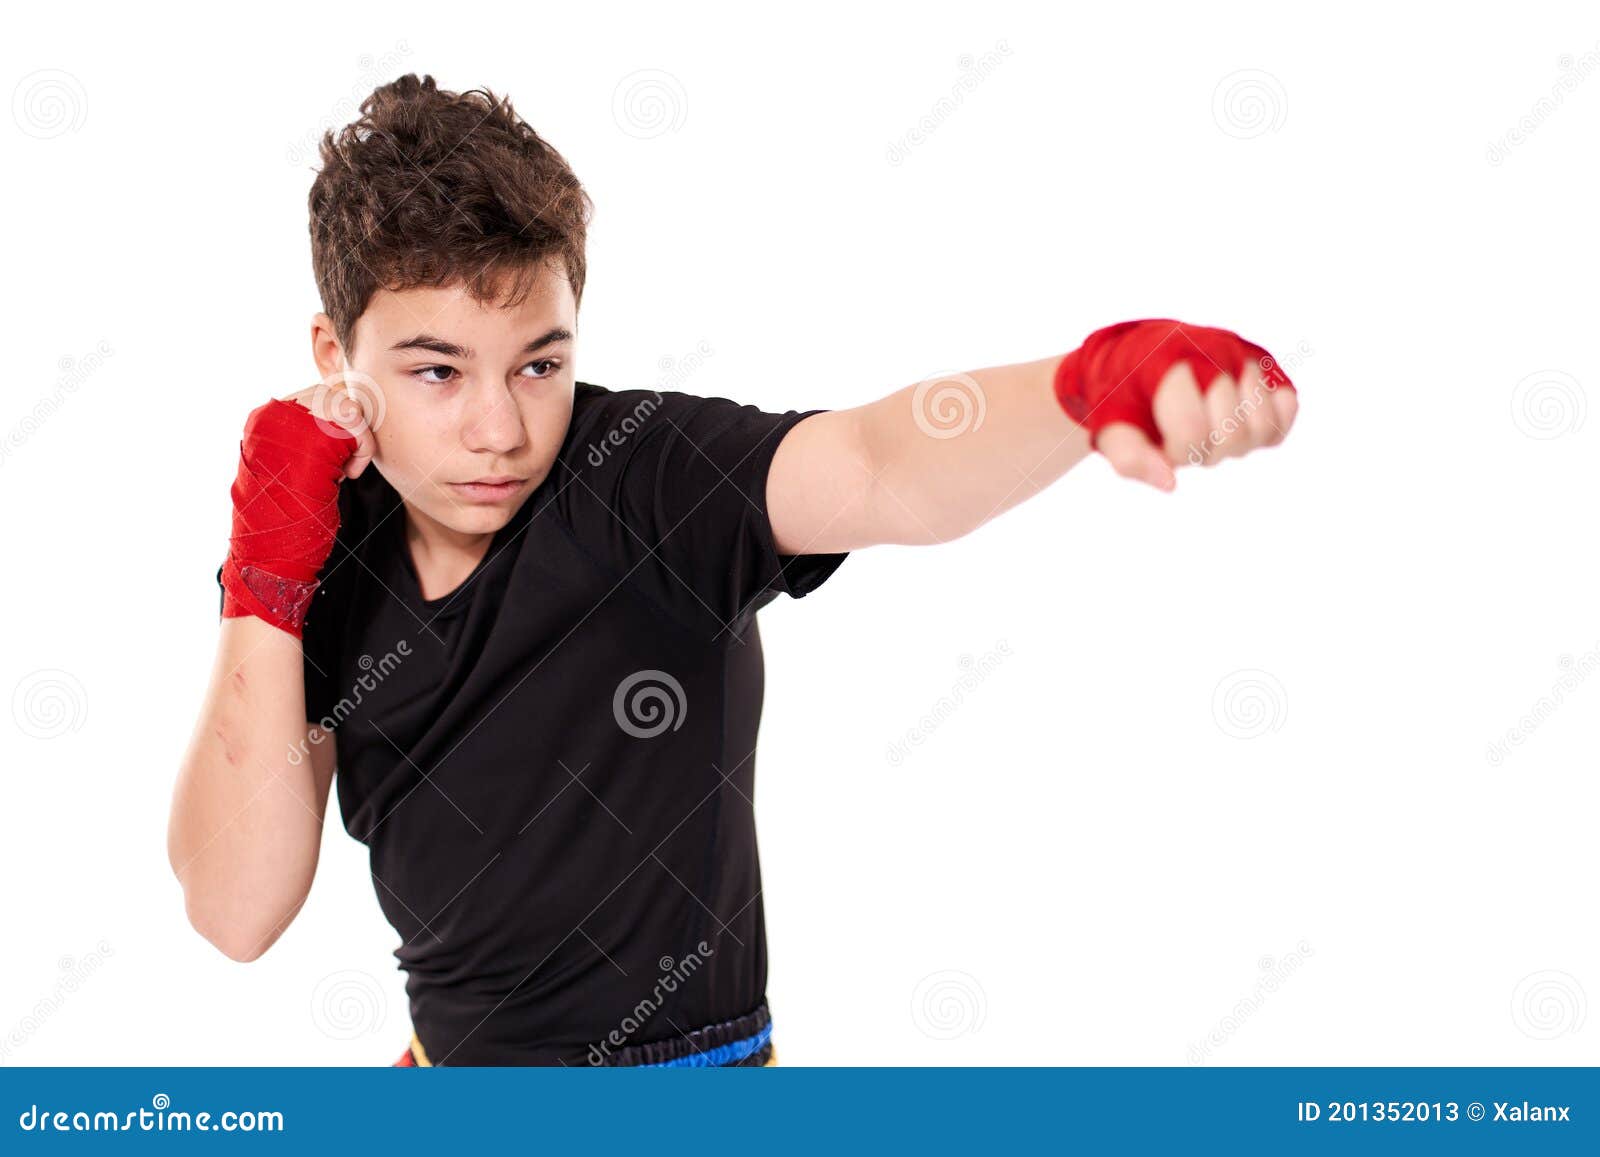 Kickboxer Training Isolated on White Stock Image - Image of martial ...